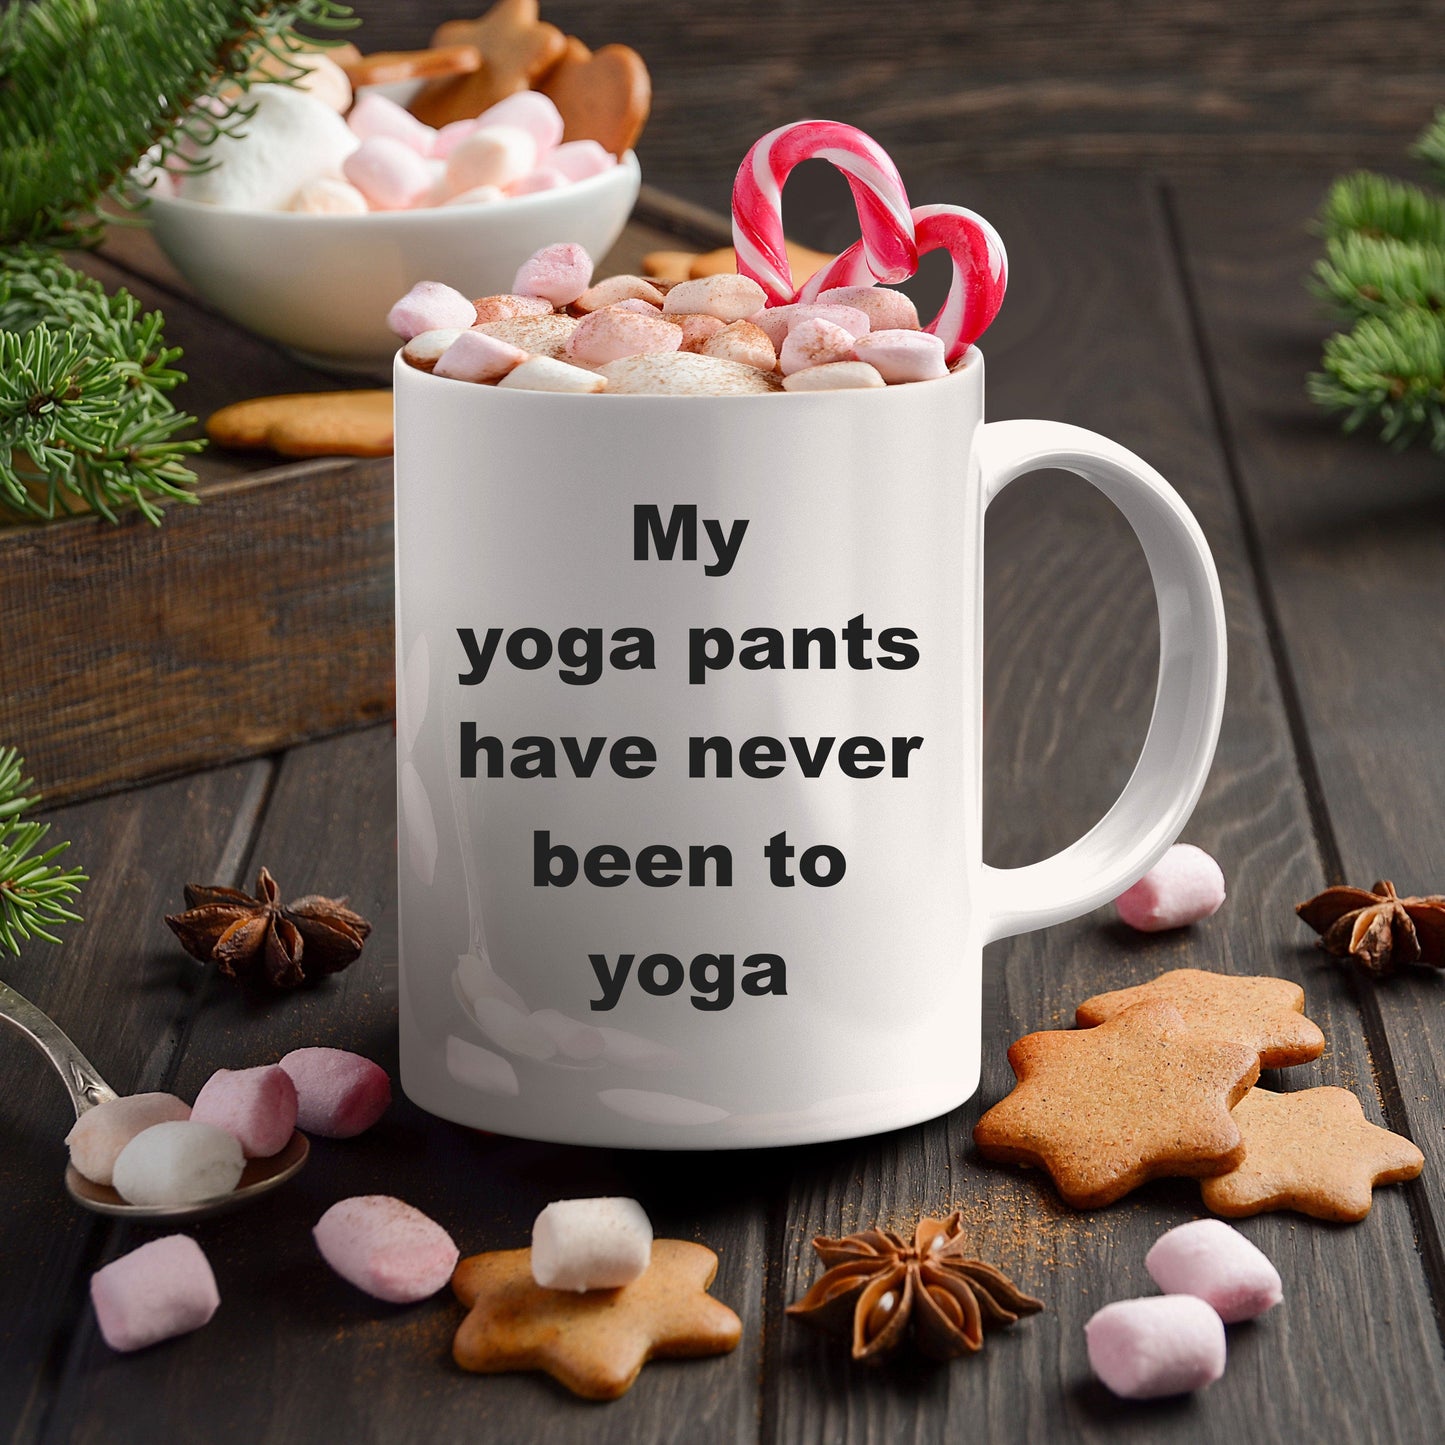 Funny Yoga Coffee Mug - My Yoga Pants have never been to Yoga